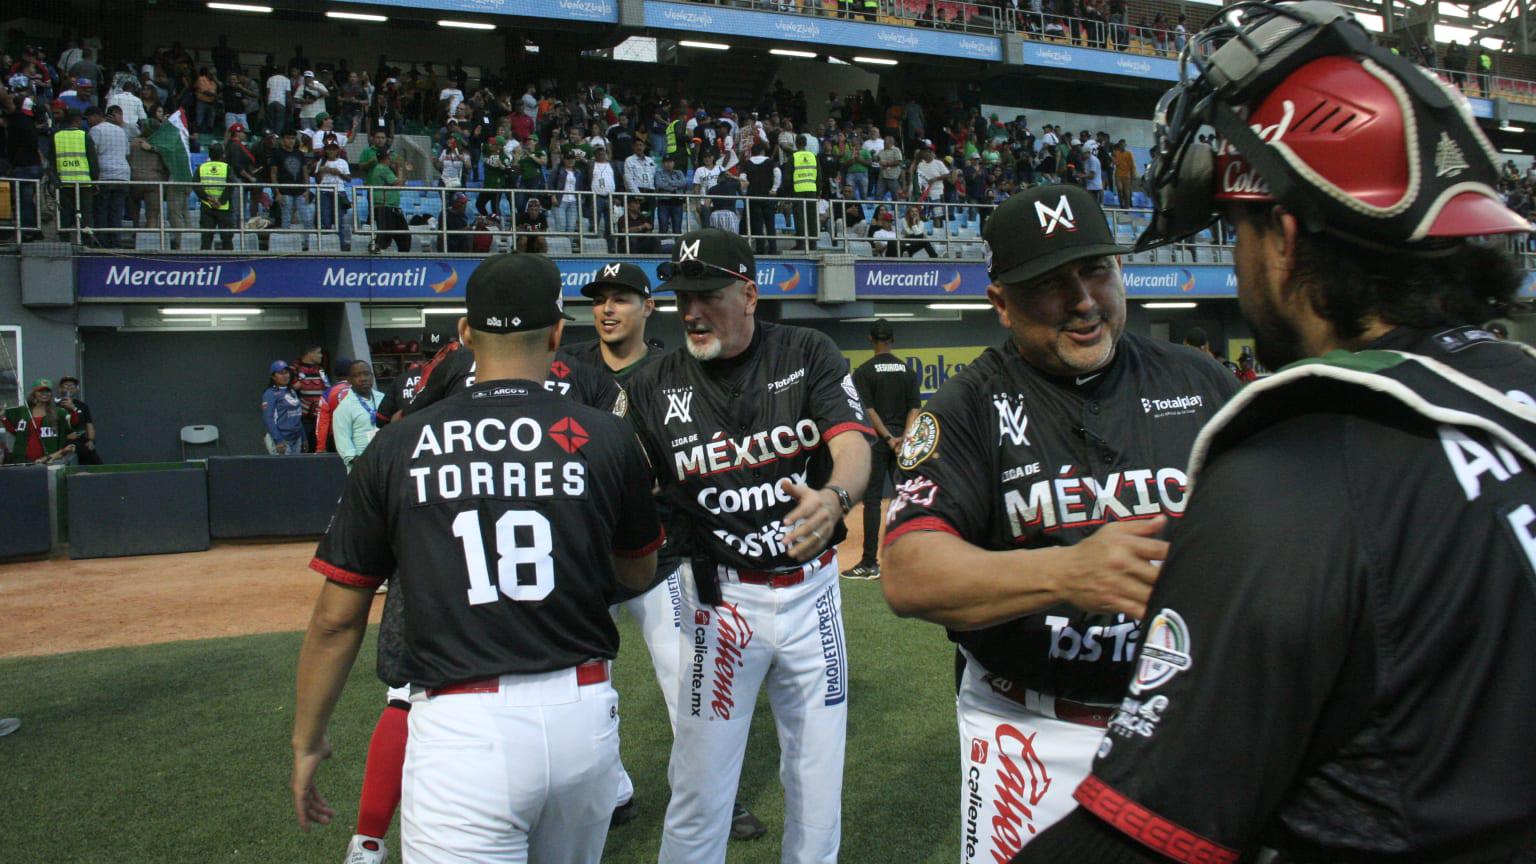 $!Moreno y Carrara: Dupla venezolana que busca ganar la Serie del Caribe con México